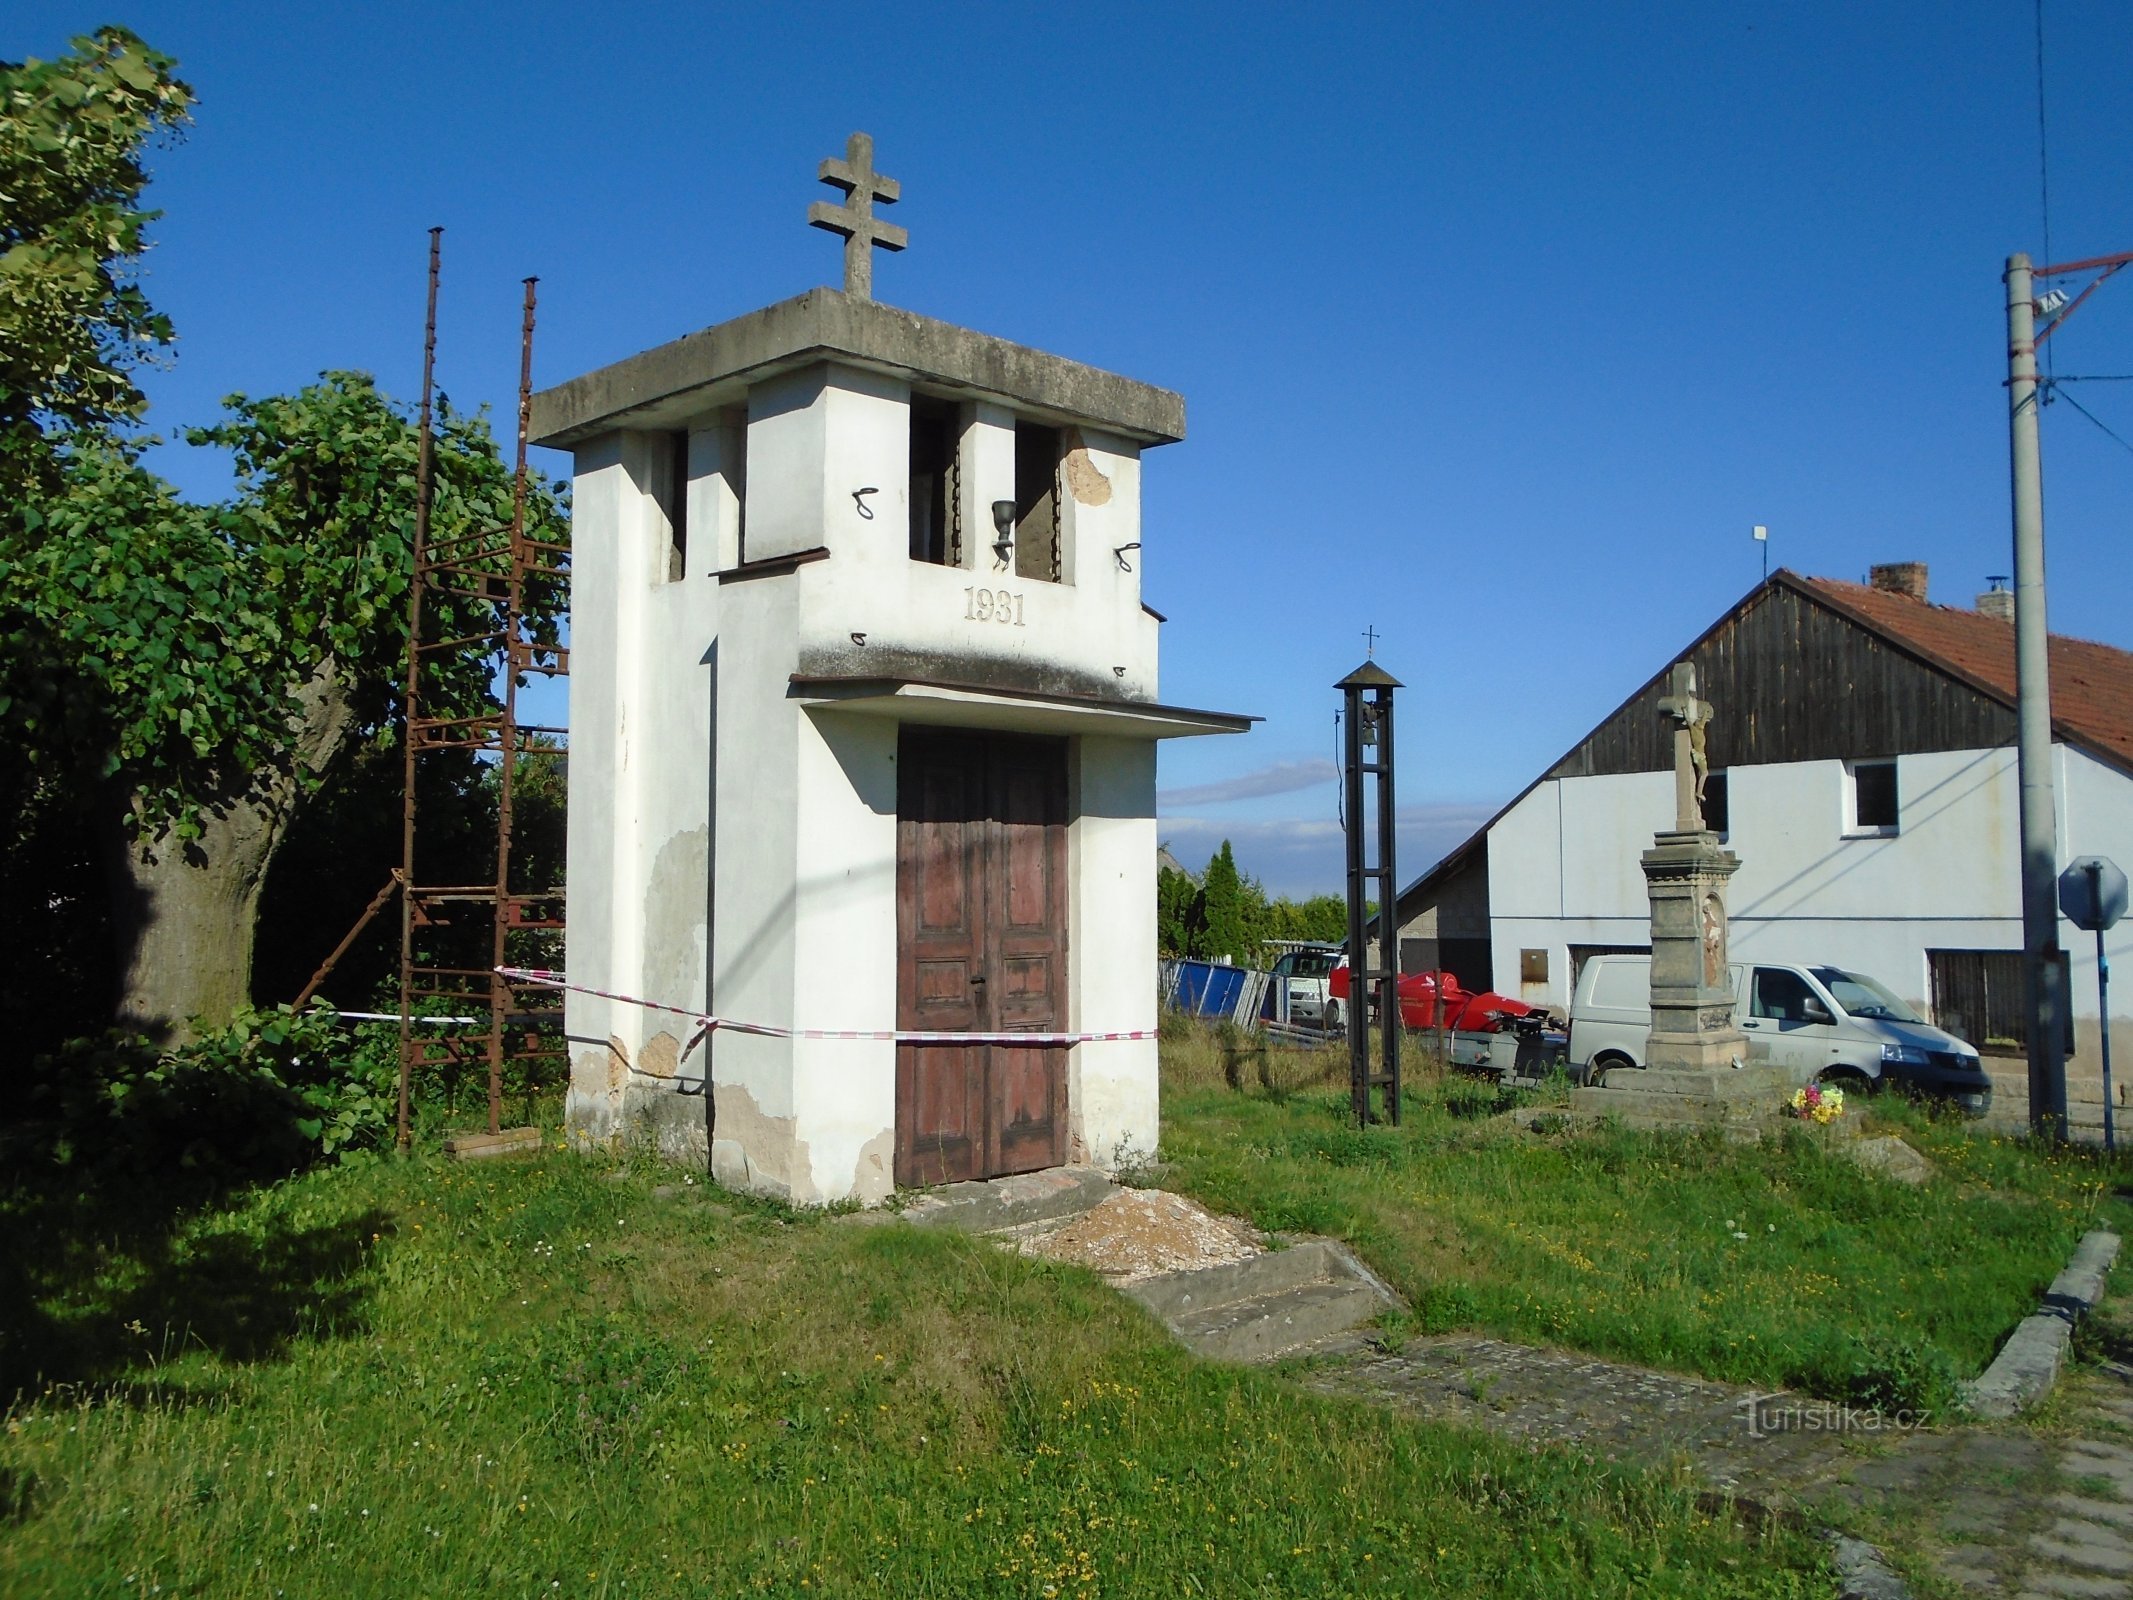 Zvonice Církve československé, zvonička a kříž před jejich opravou (Syrovátka)